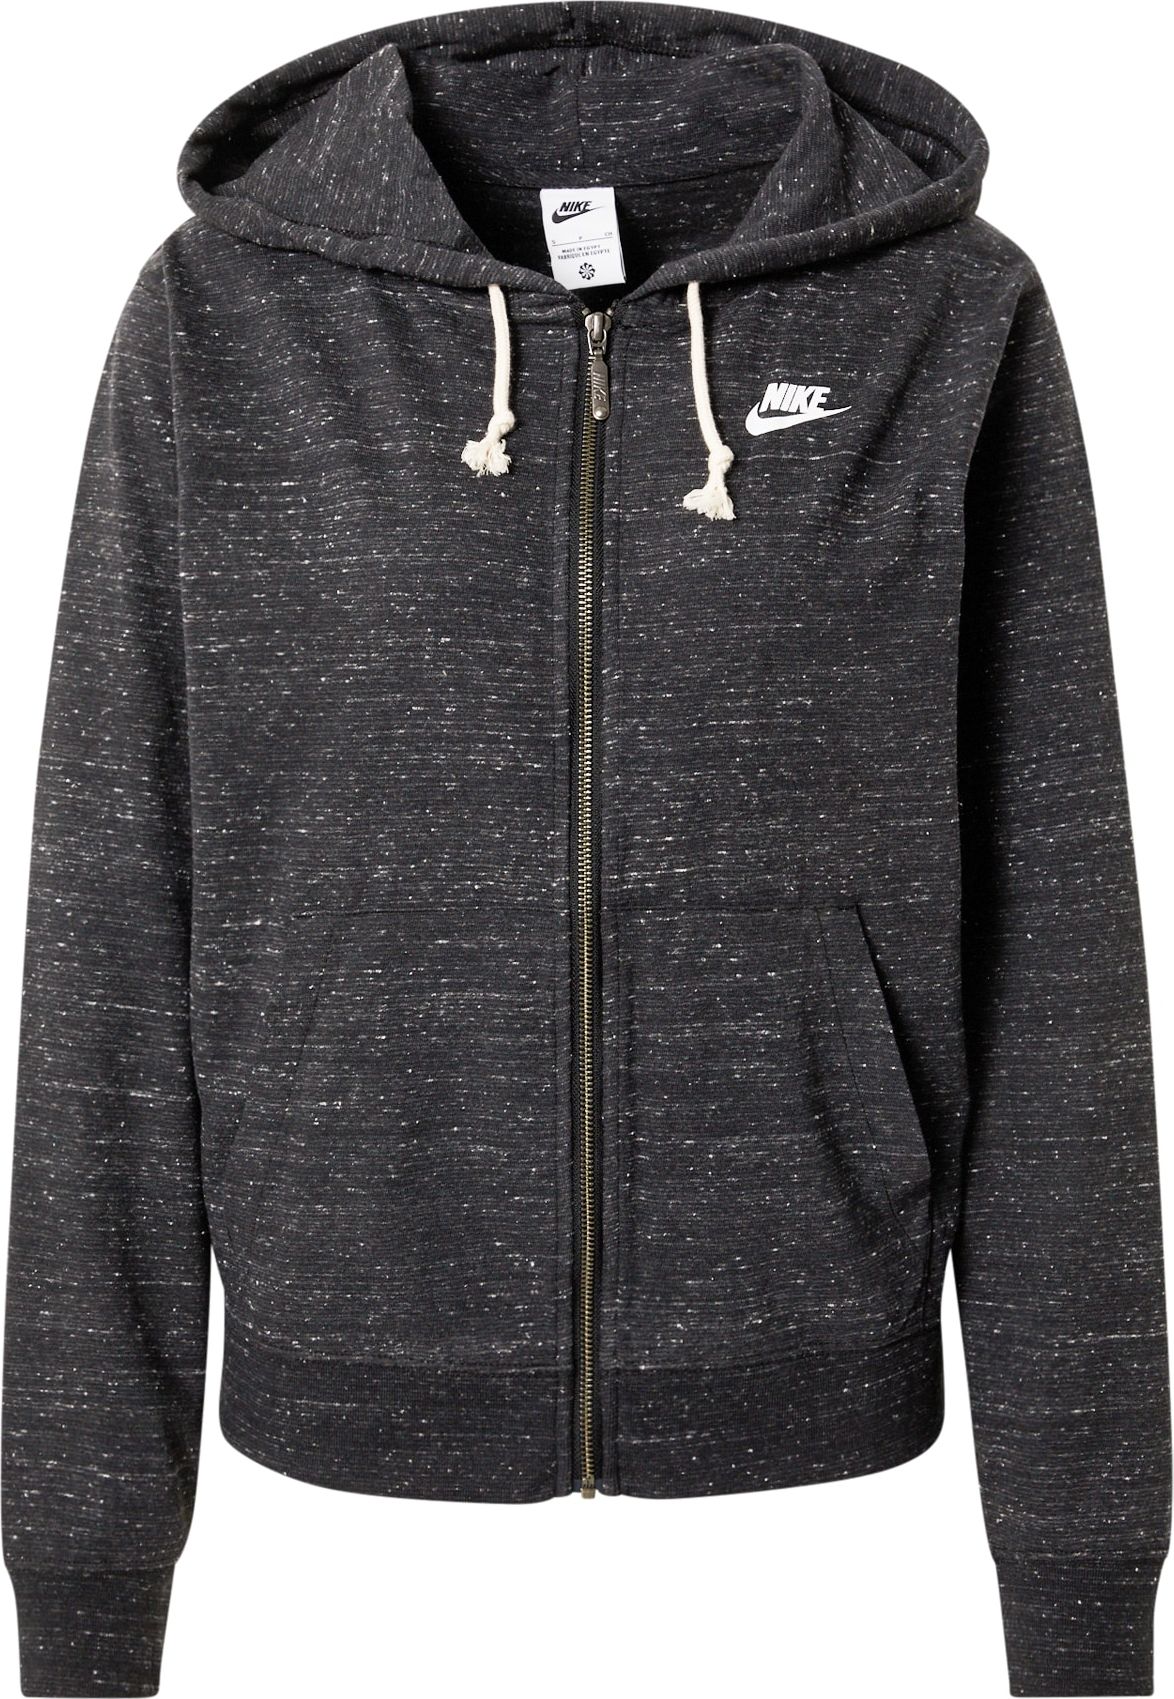 Nike Sportswear Mikina s kapucí černá / bílá